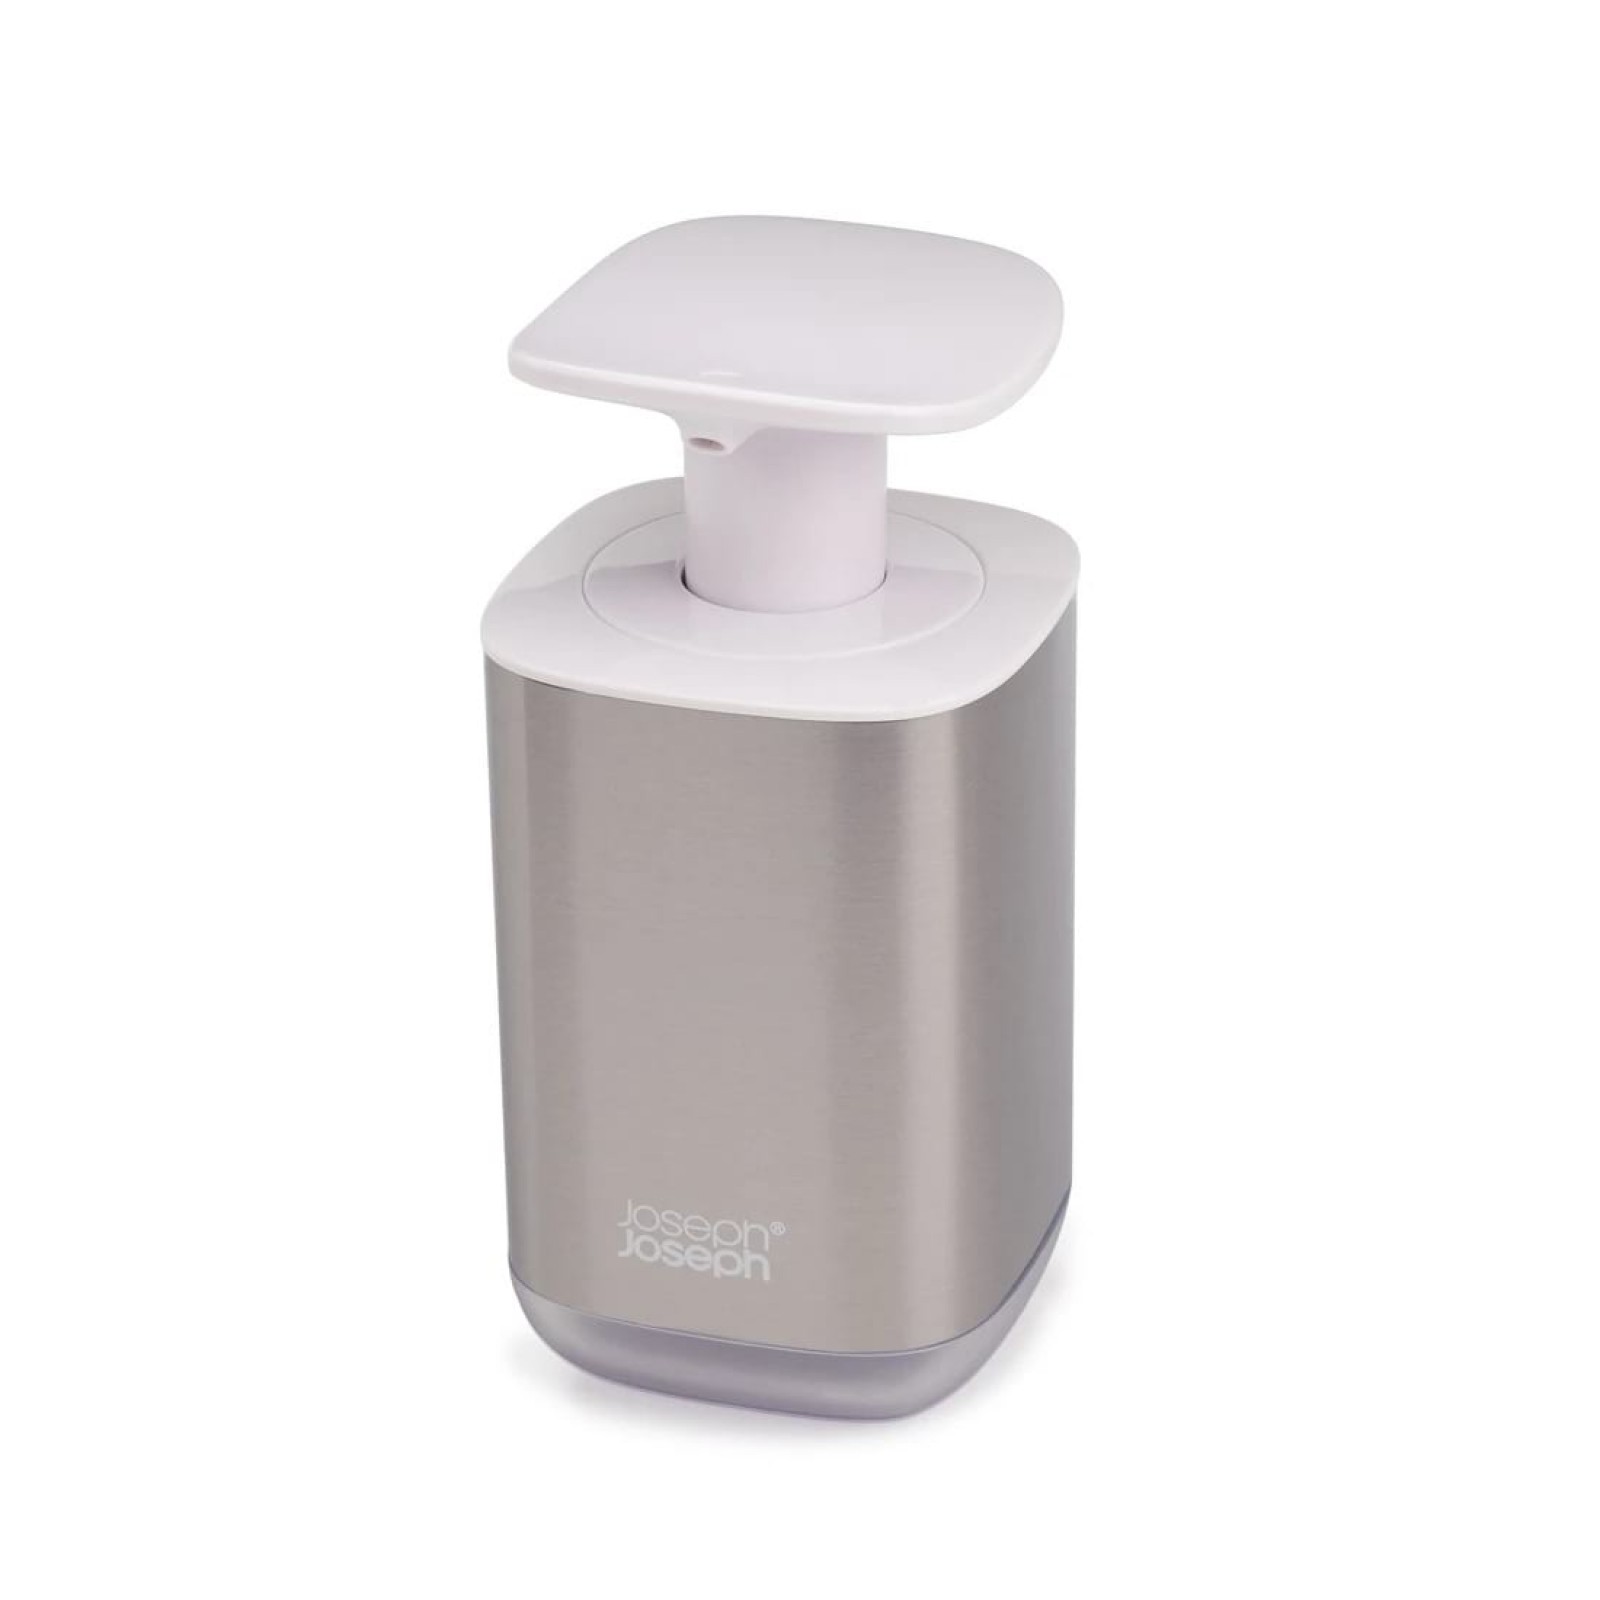 Presto™ Hygienic Soap Dispenser (Stainless Steel) - Joseph Joseph